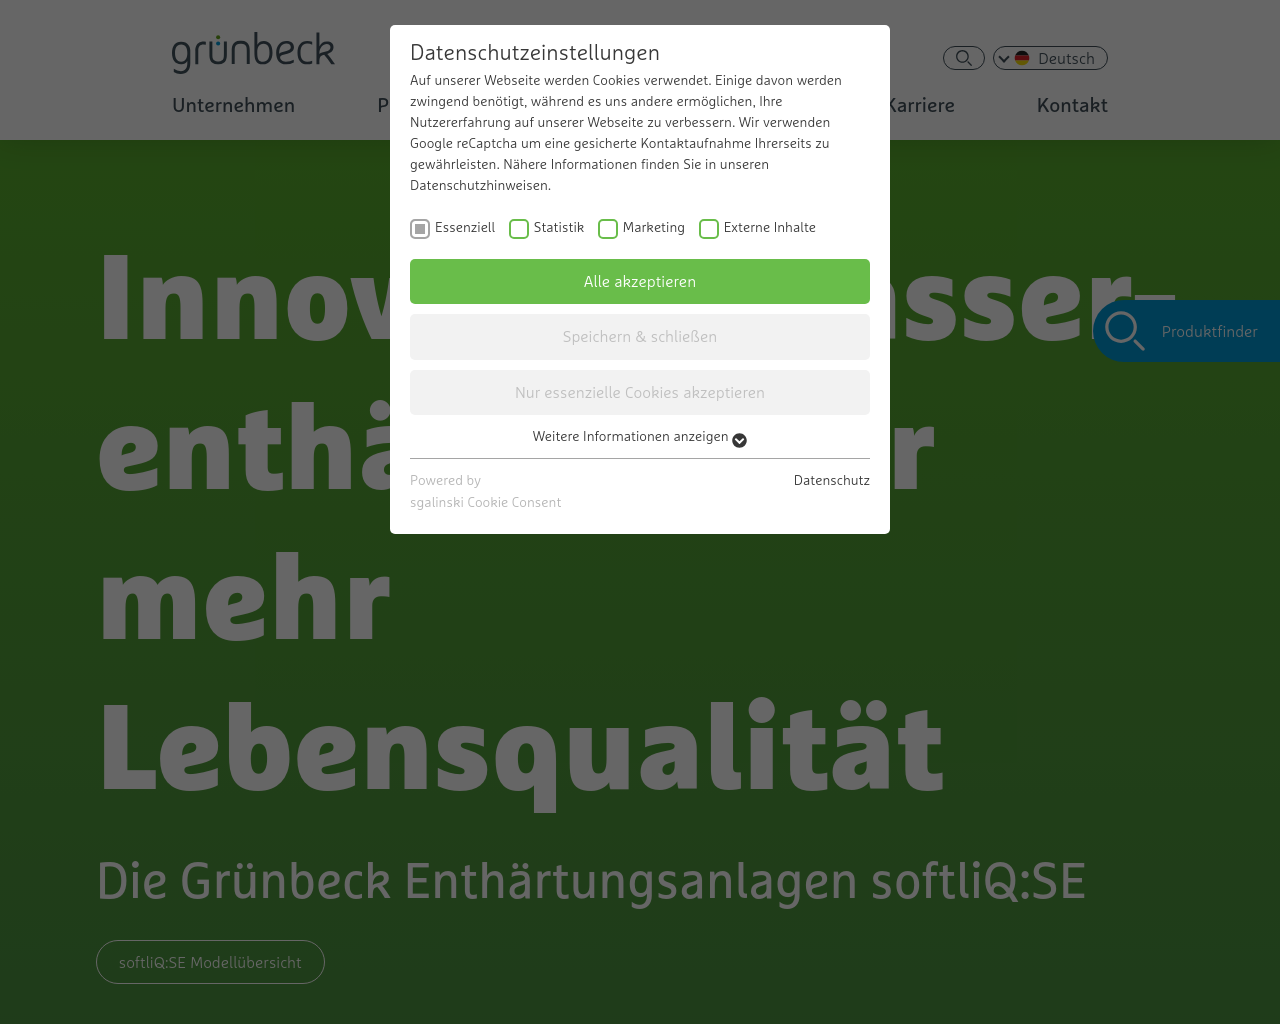 gruenbeck.de